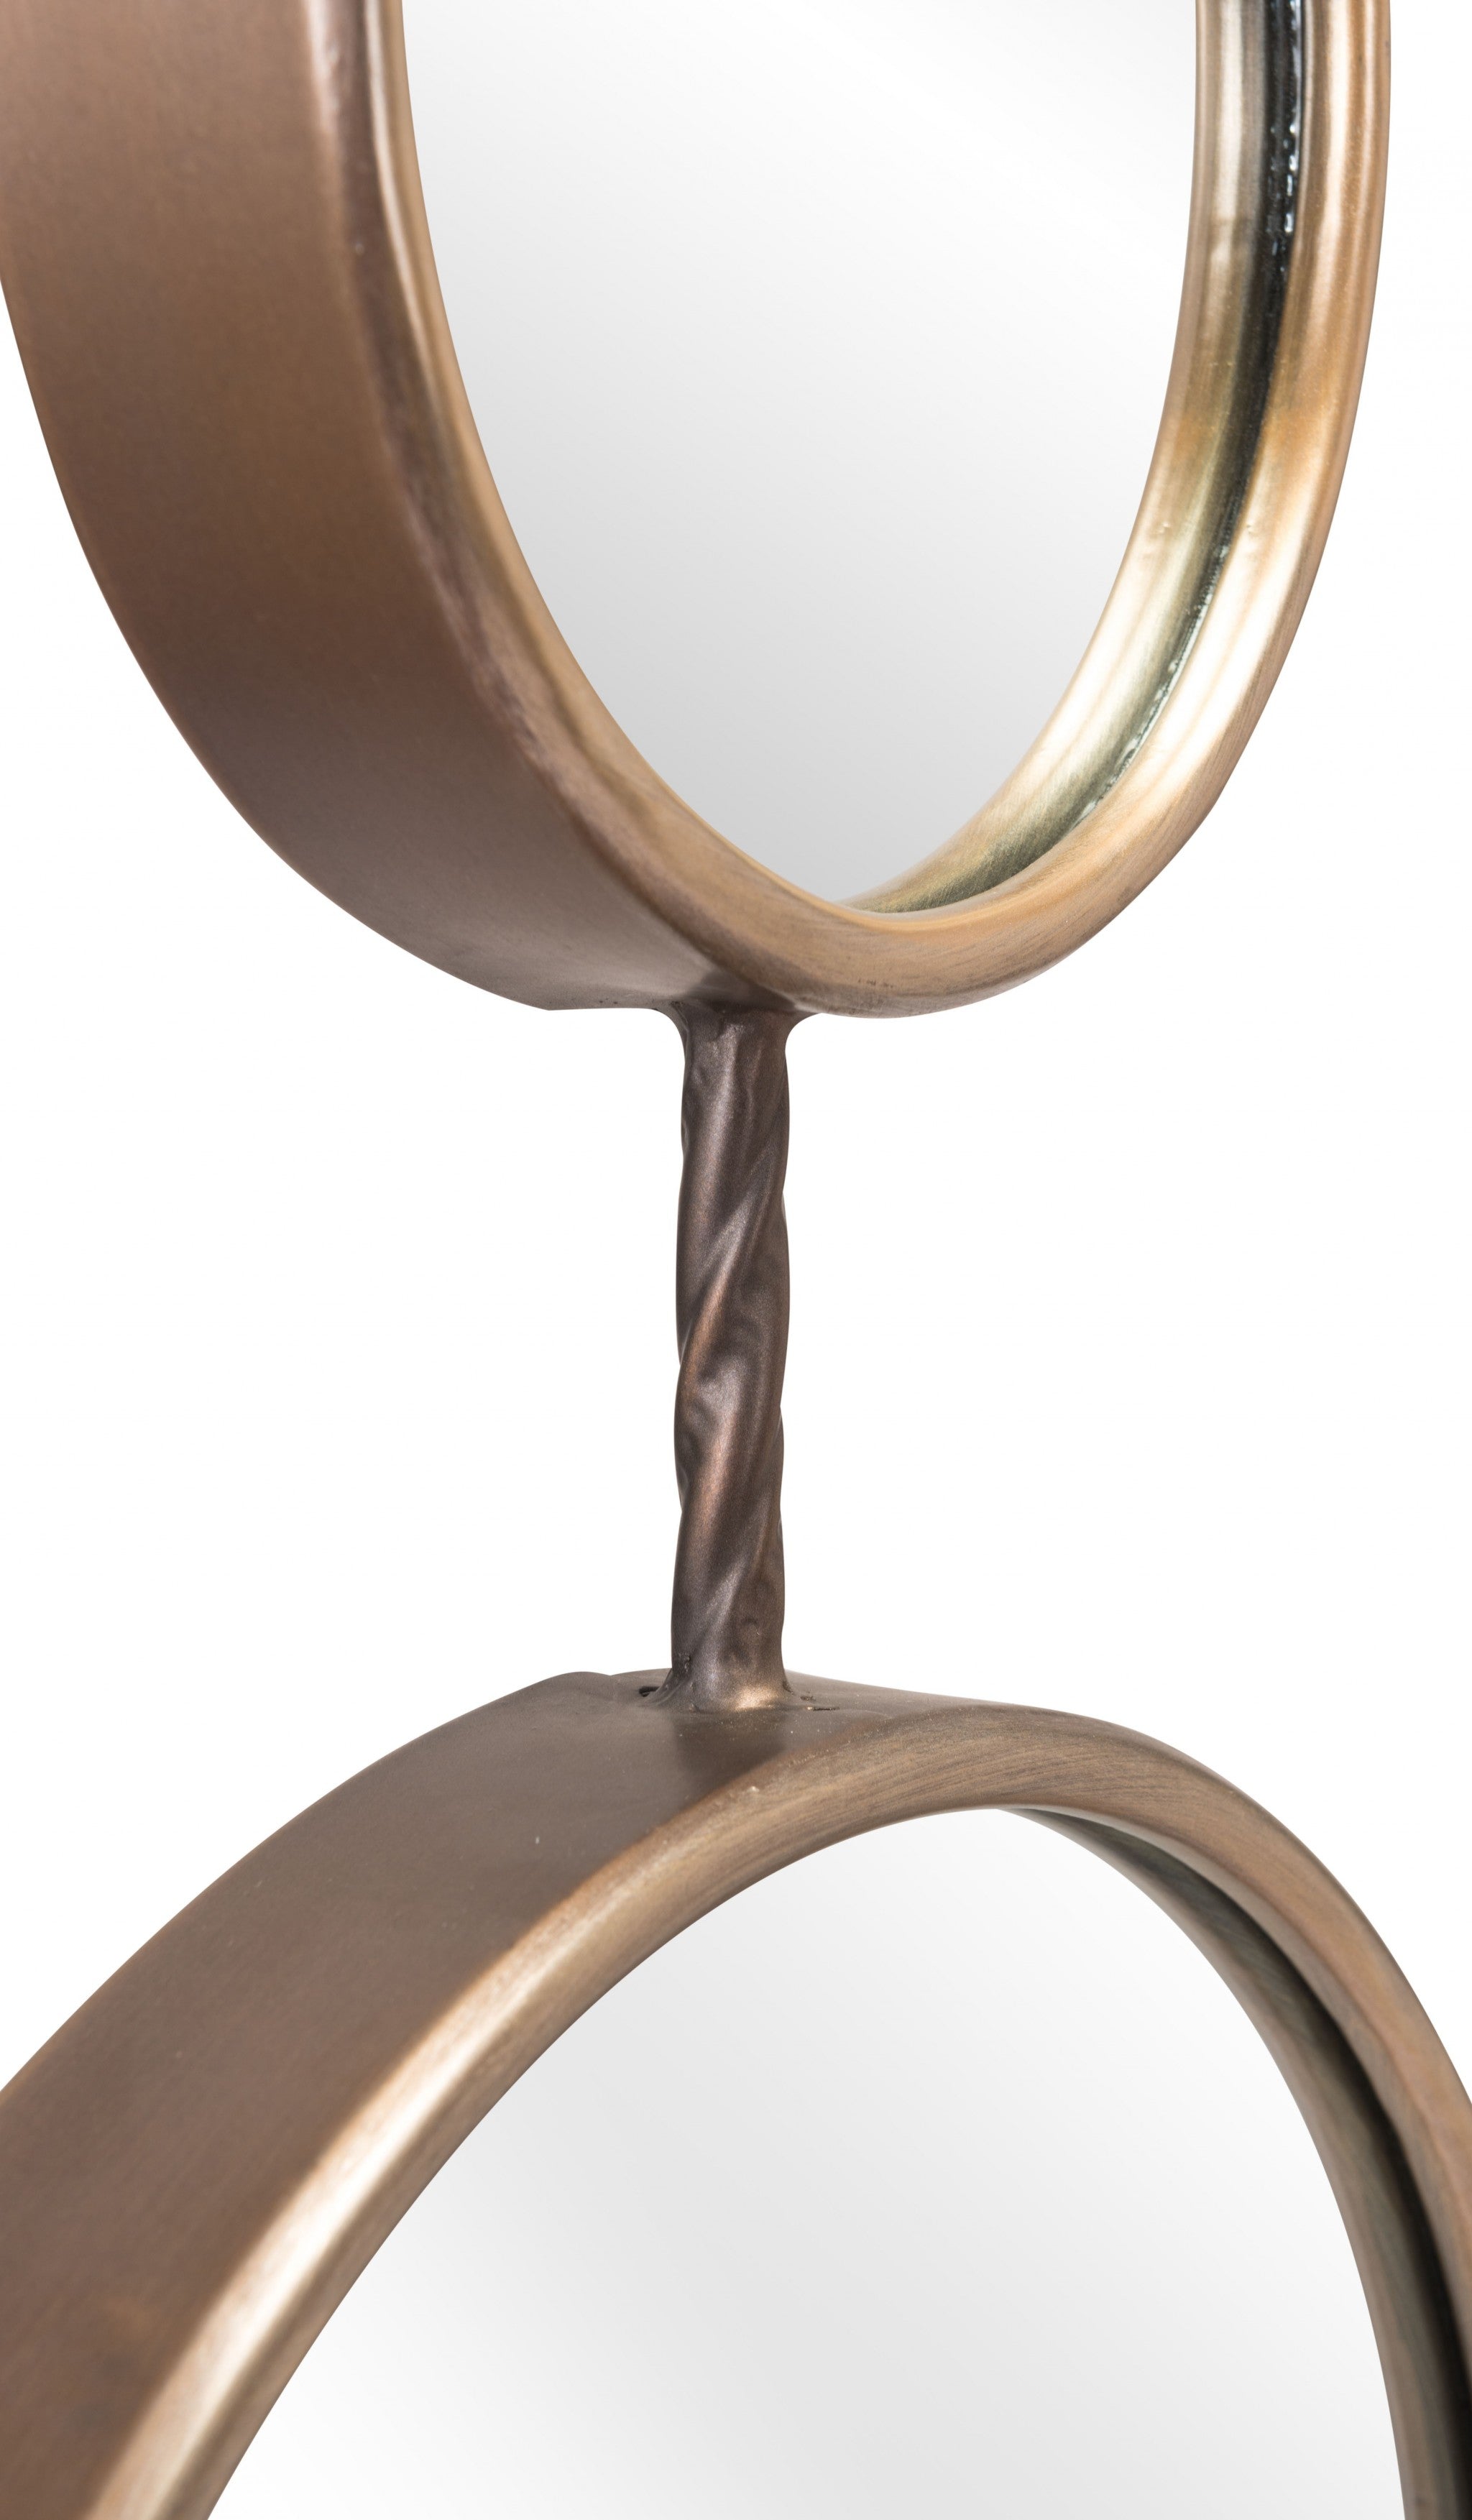 Gold Modern Hanging Mirror Duo